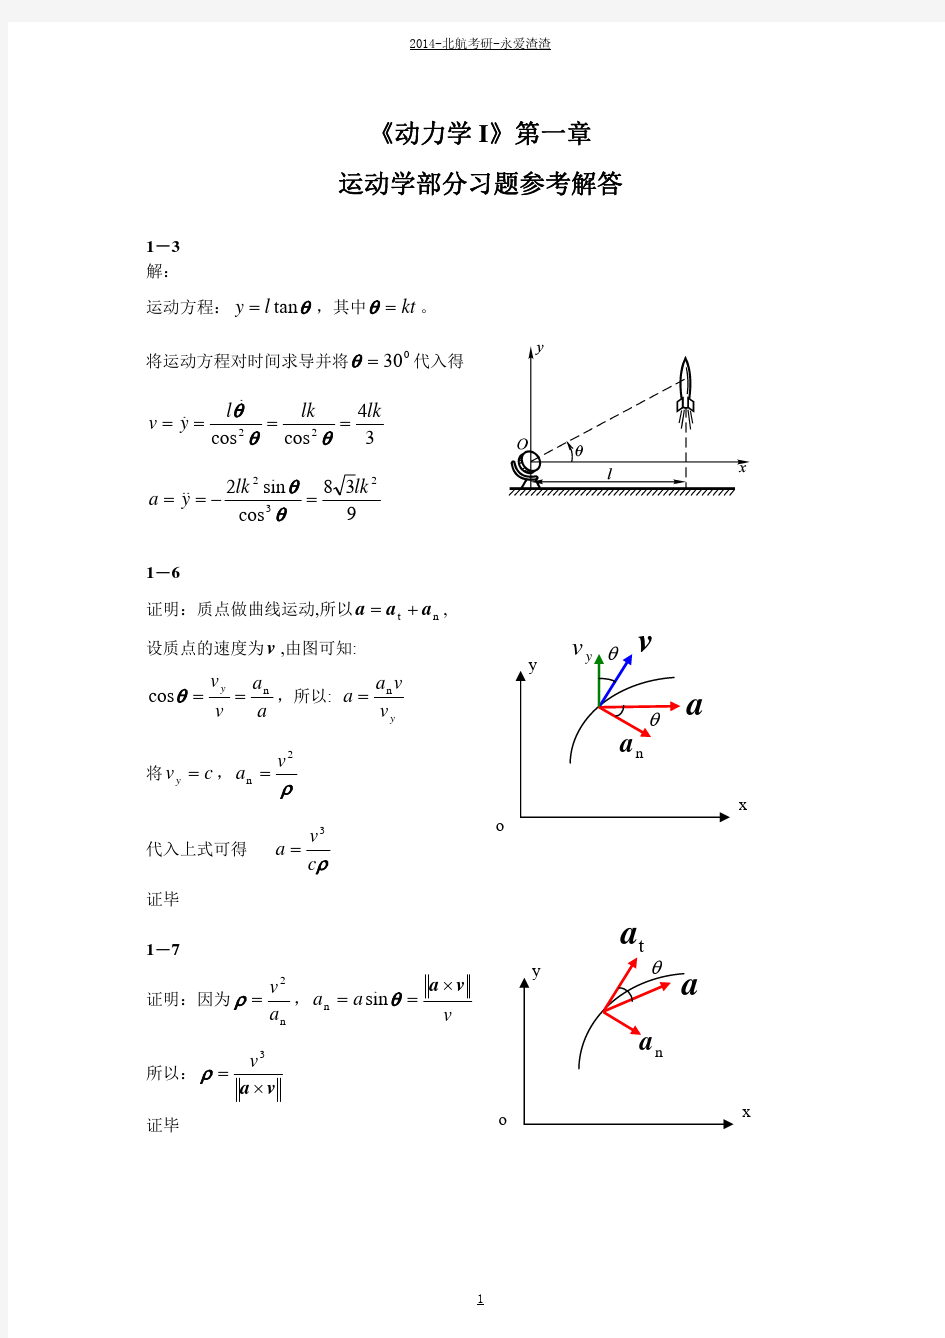 理论力学(附答案)-谢传峰、王琪-动力学部分